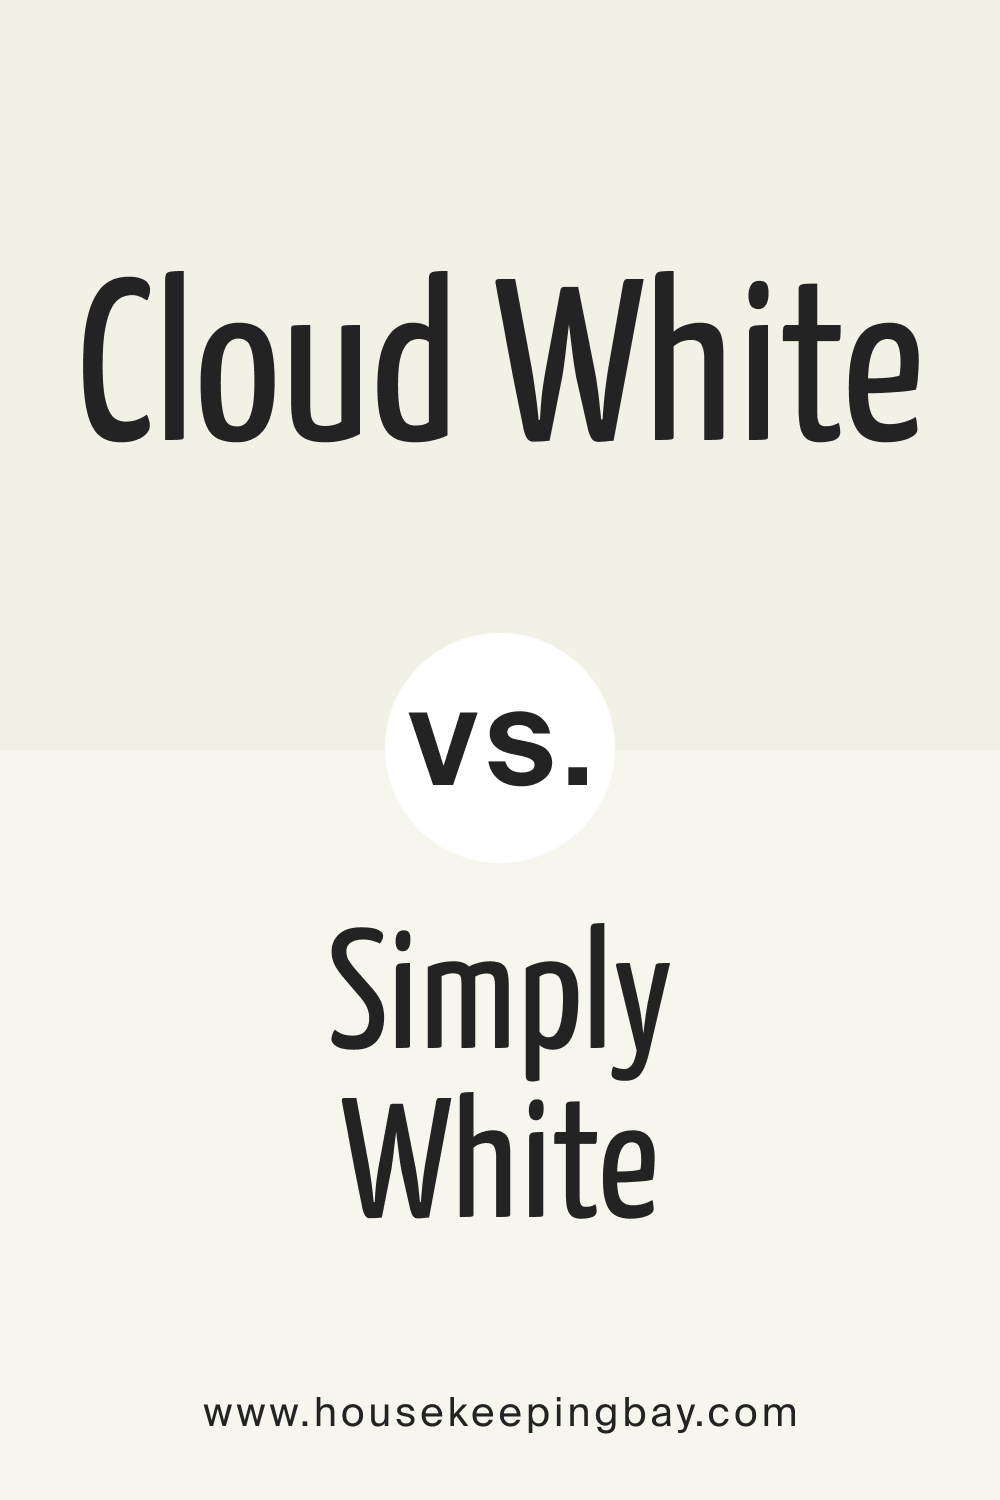 Cloud White OC 130 Paint Color vs. Simply White